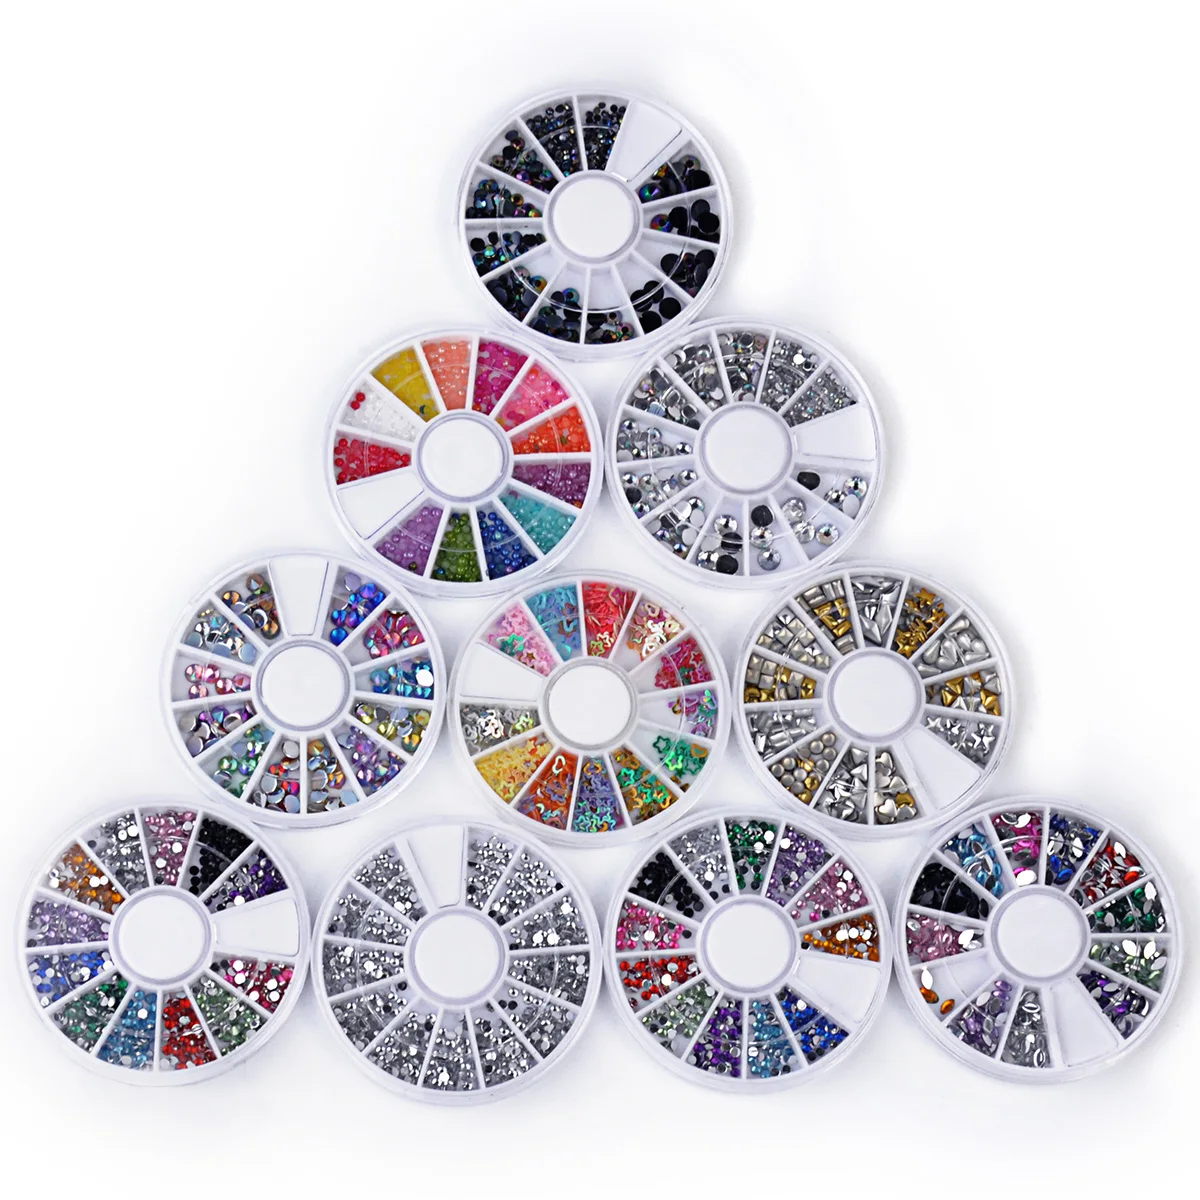 Biutee 10 колеса дизайн ногтей декора ногтей стразами Премиум Маникюр nail art украшения всего 15000 Самоцветы Nail инструмент